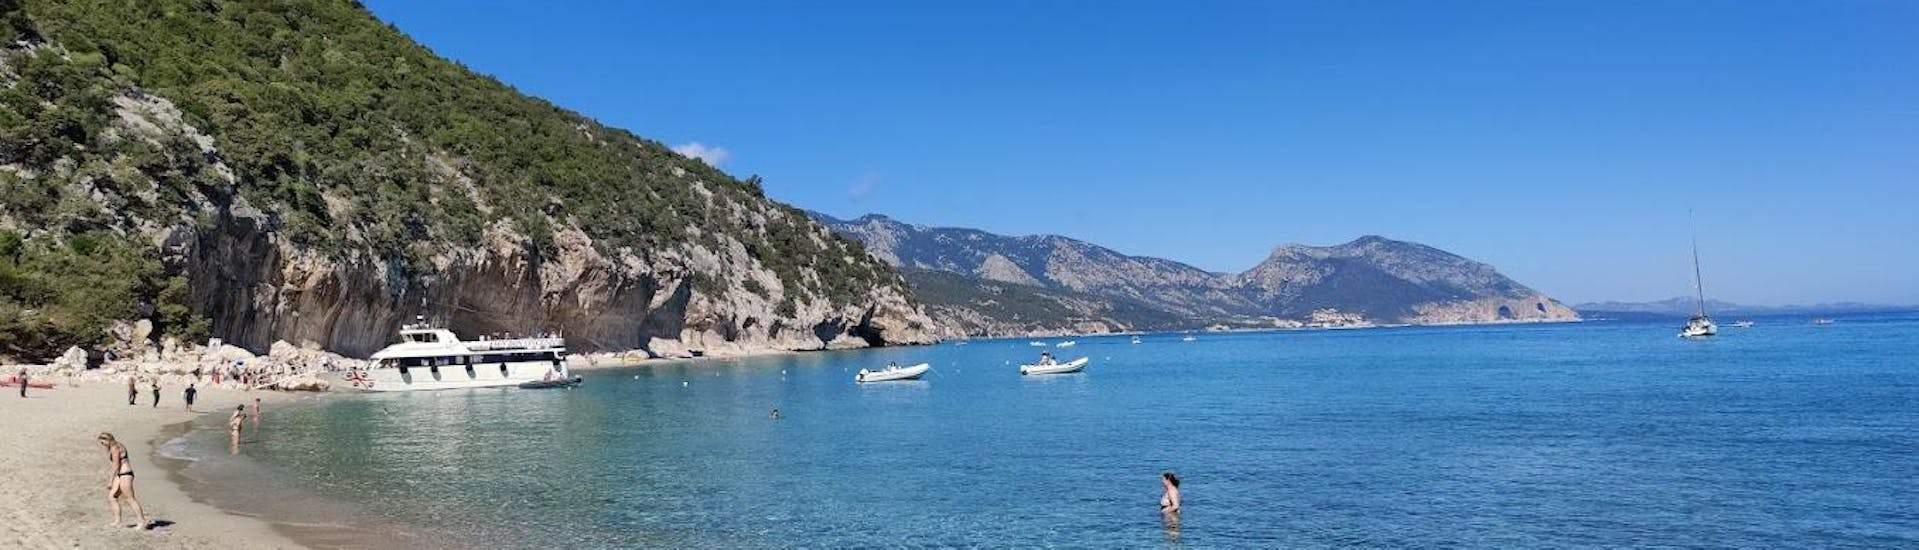 Una delle baie che potete visitare con East Coast Sardinia Excursion.